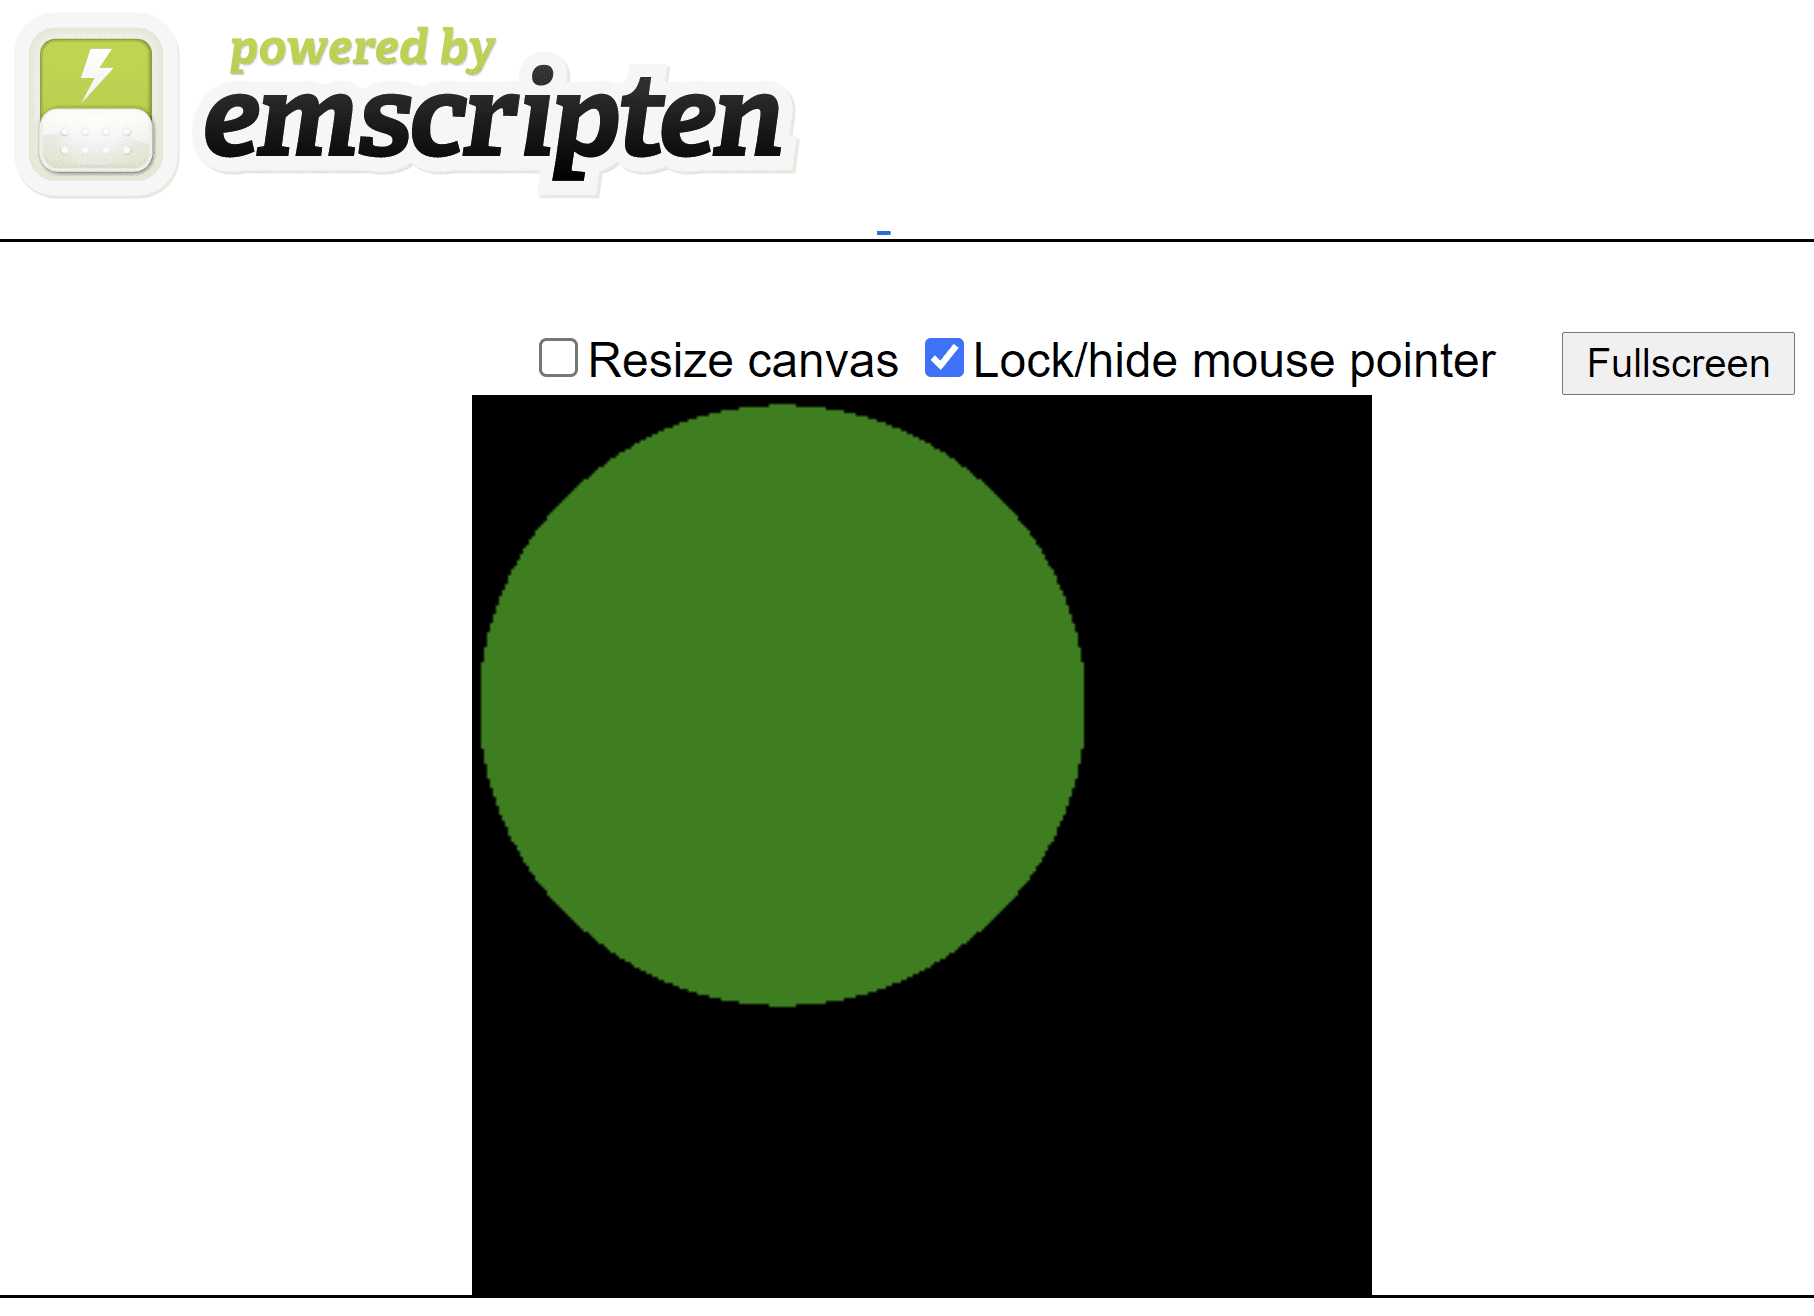 脚本生成的 HTML 网页，在黑色方形画布上显示一个绿色圆圈。